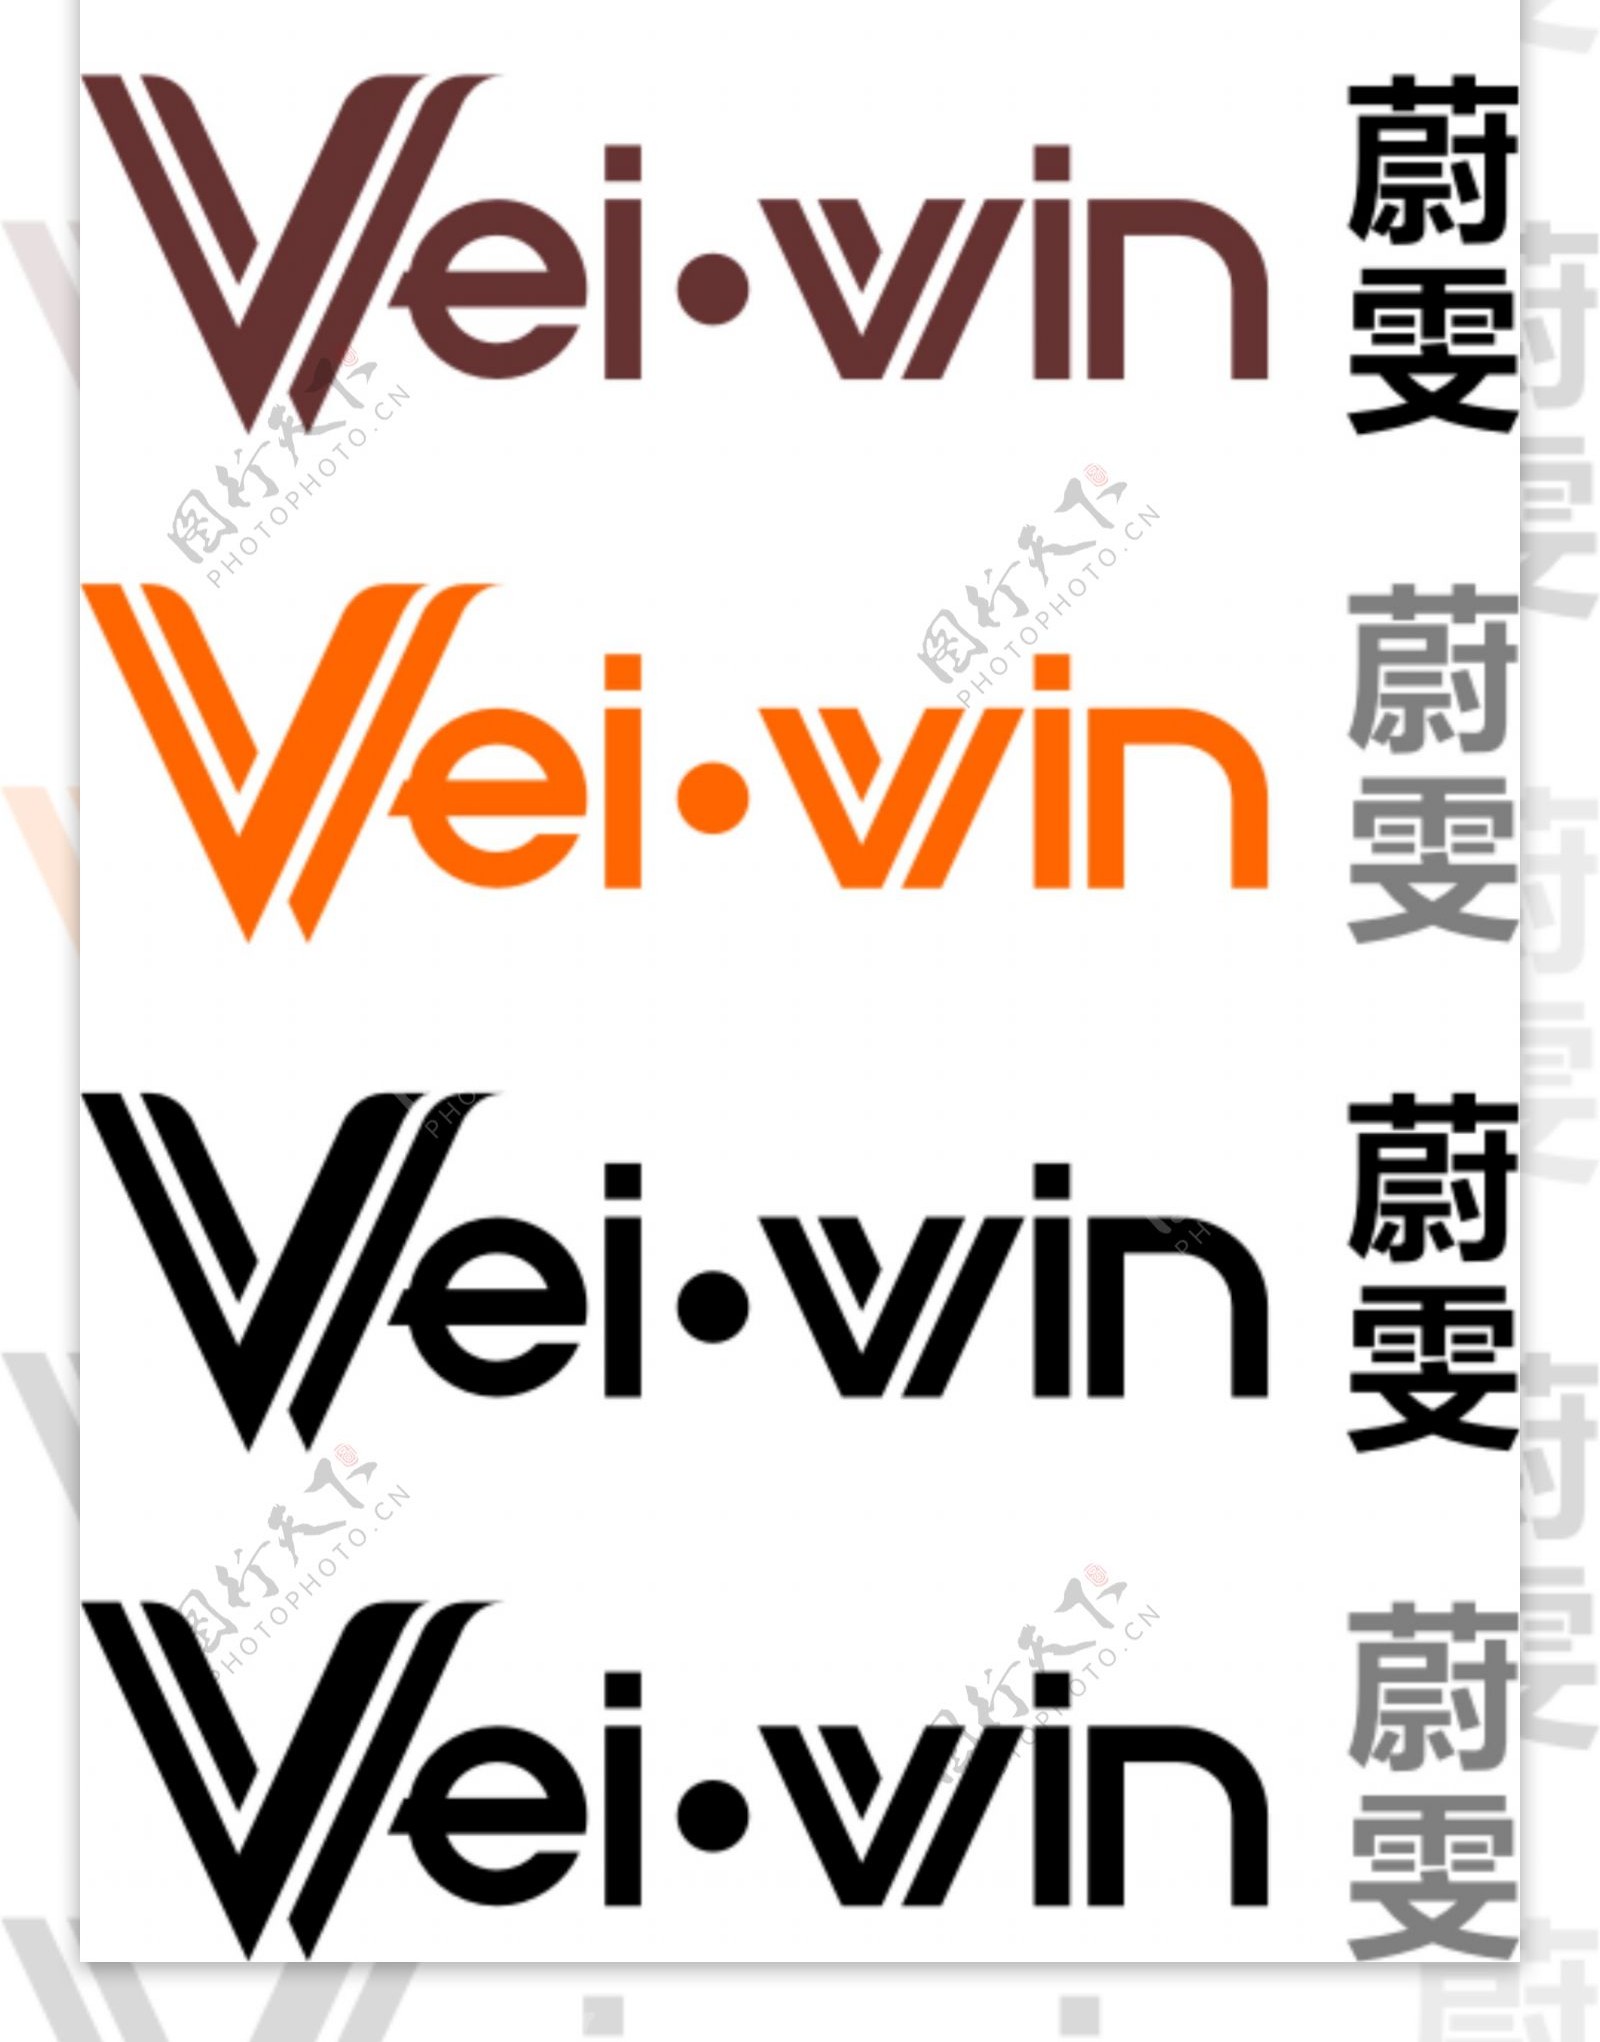 Weiwin休闲服装商标设计